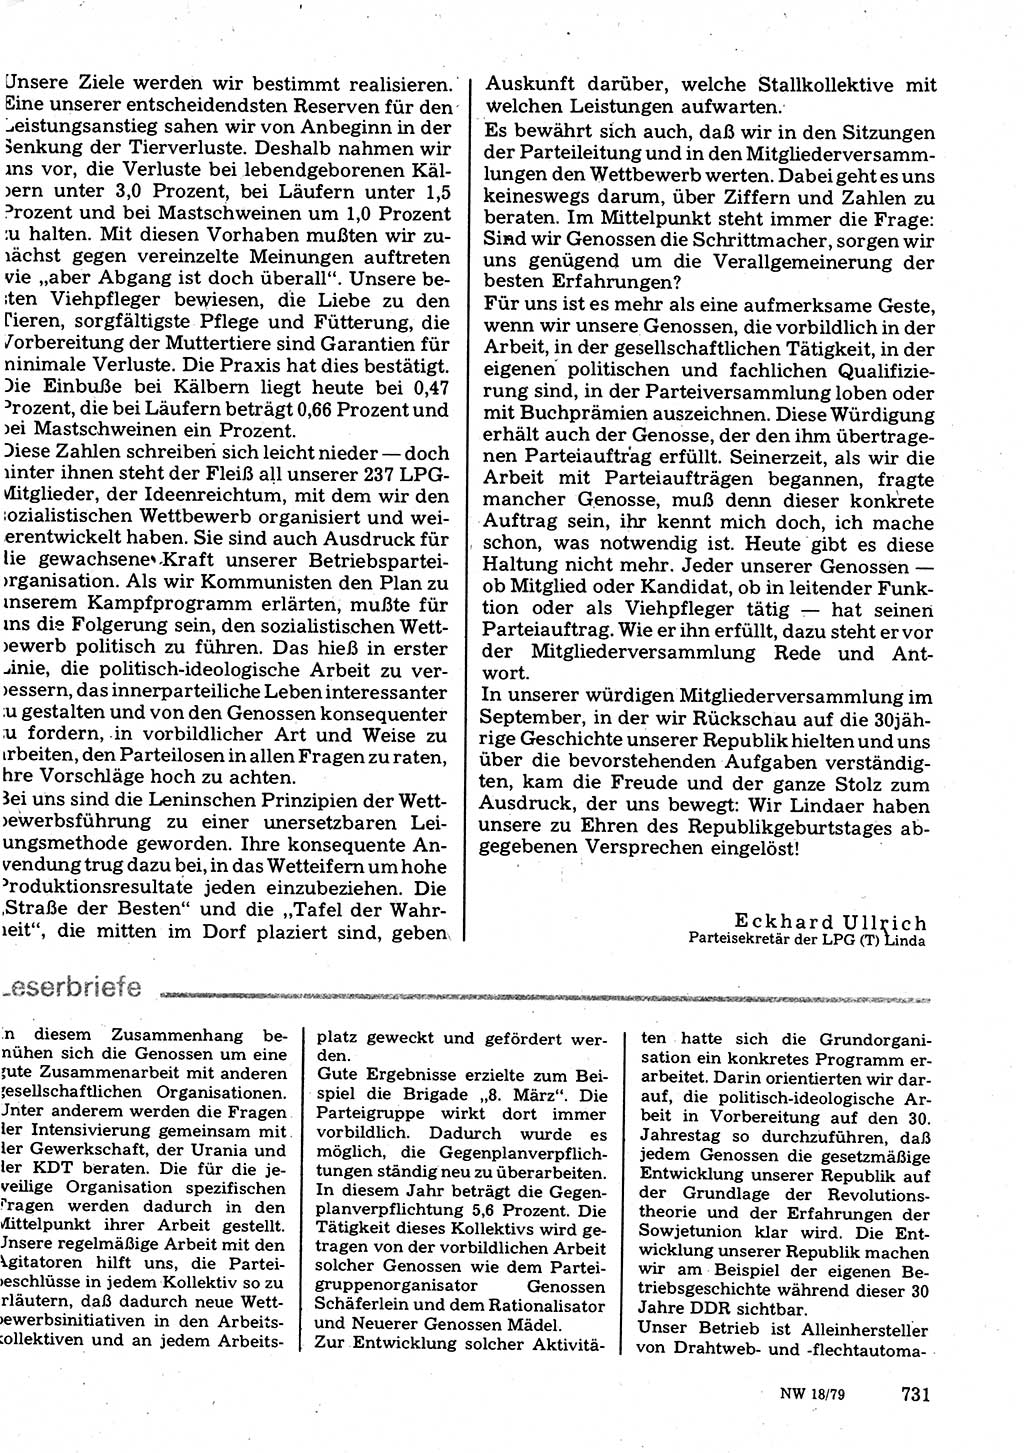 Neuer Weg (NW), Organ des Zentralkomitees (ZK) der SED (Sozialistische Einheitspartei Deutschlands) für Fragen des Parteilebens, 34. Jahrgang [Deutsche Demokratische Republik (DDR)] 1979, Seite 731 (NW ZK SED DDR 1979, S. 731)